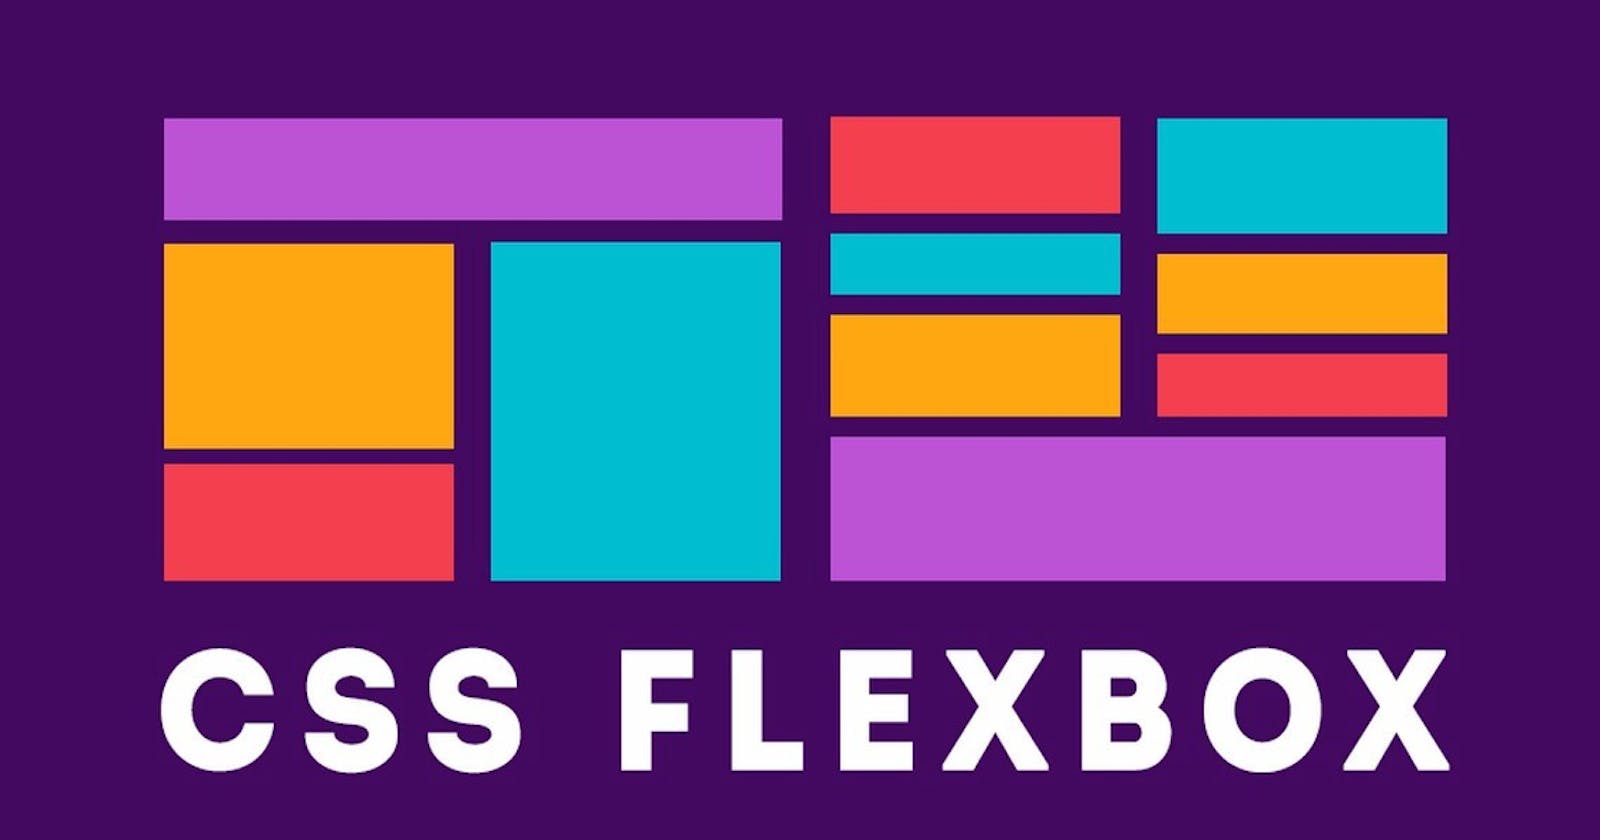 CSS Flexbox Cheat Sheet for Beginners